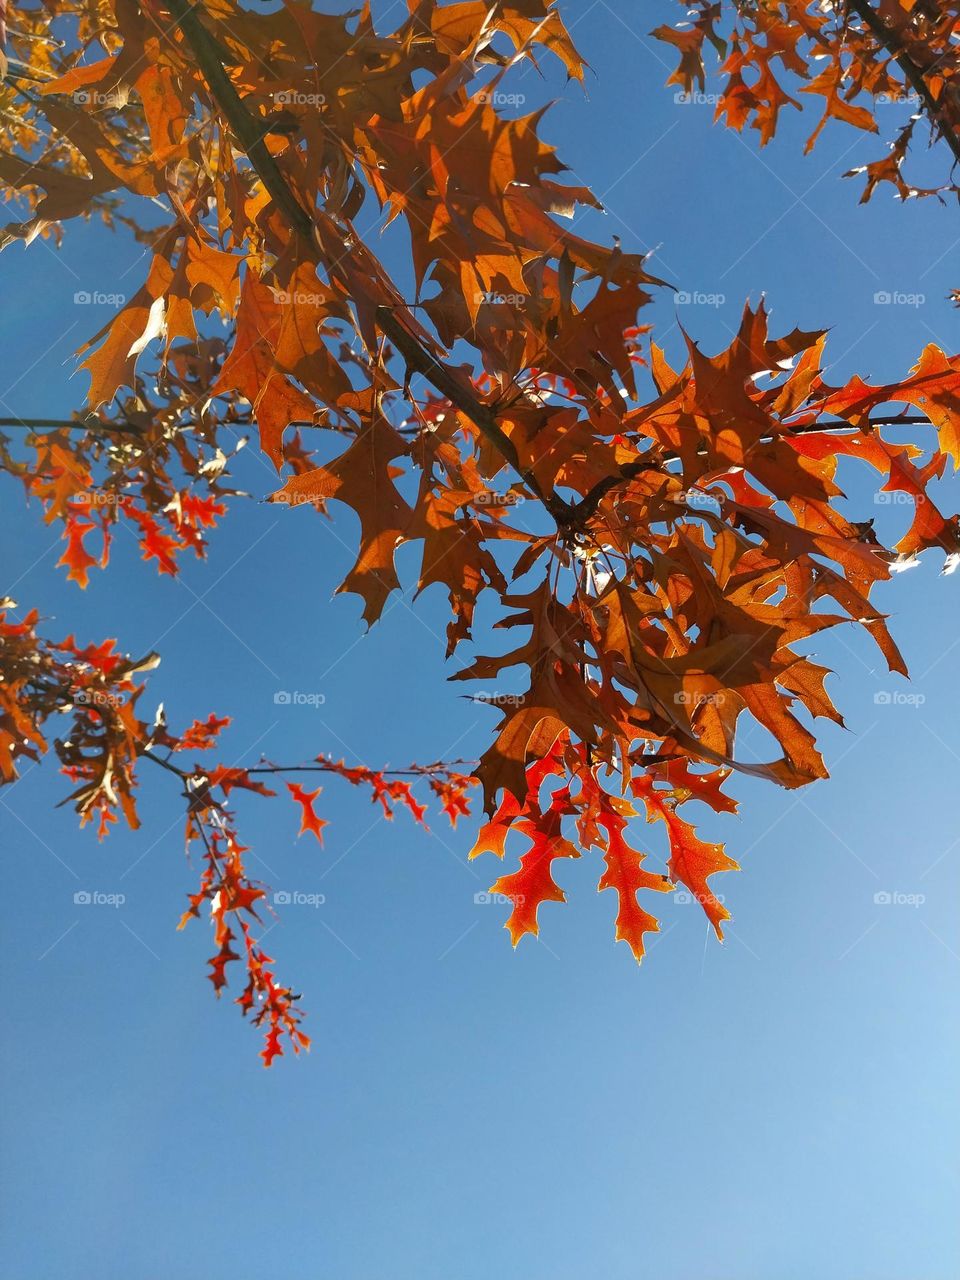 Autumn Leaves vs Blue Skies